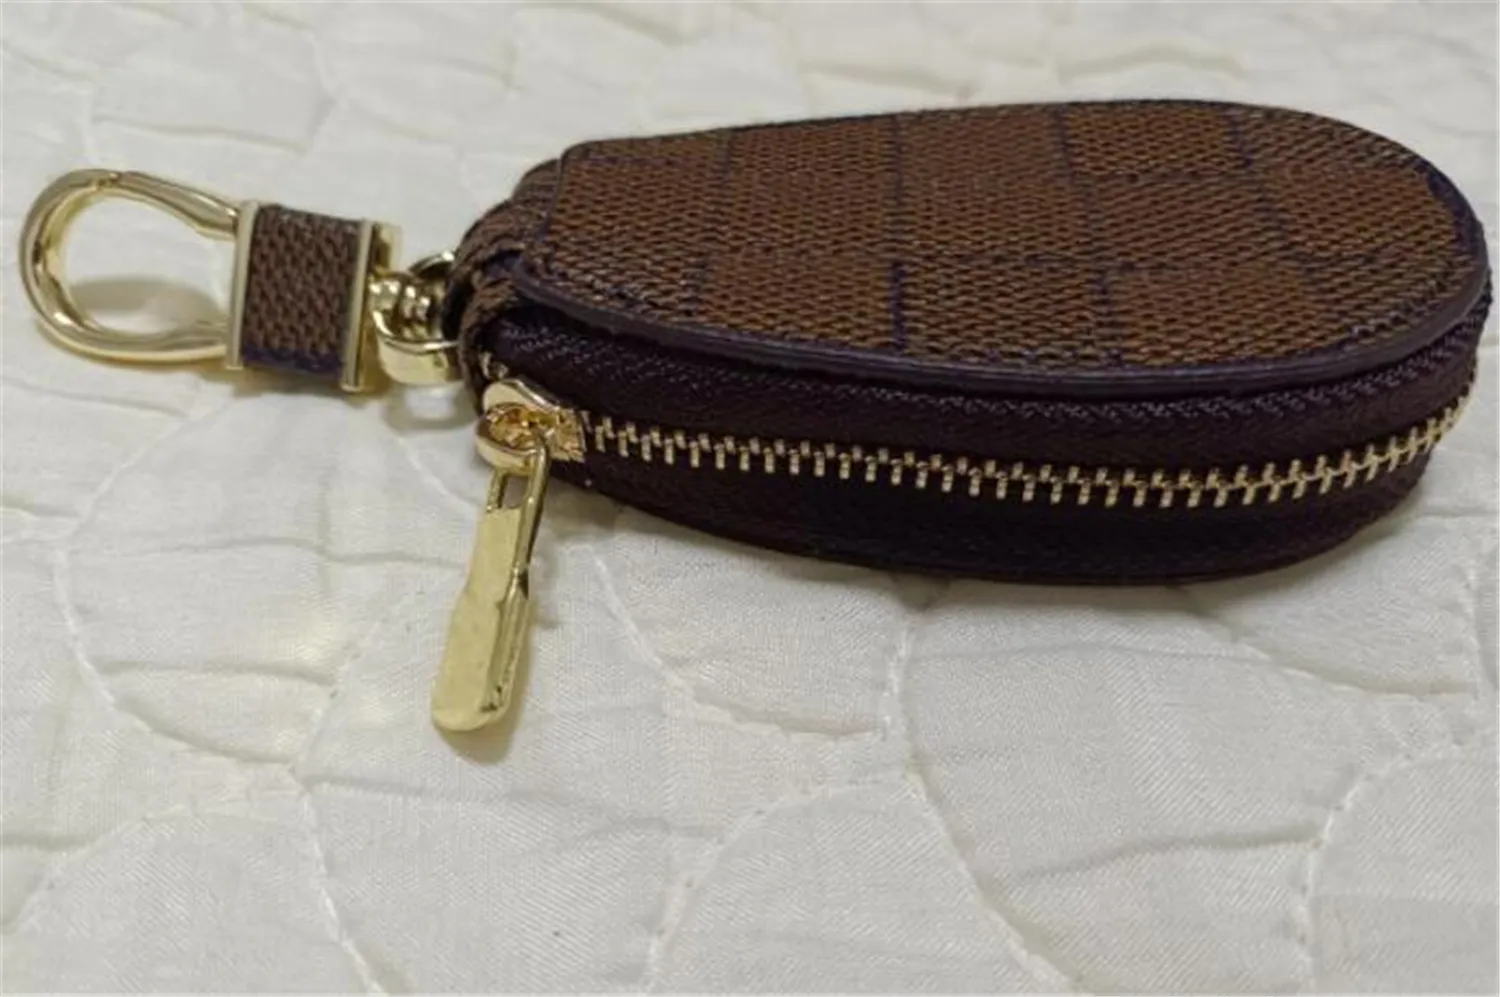 Mode clé boucle sac voiture porte-clés à la main de luxe concepteur en cuir véritable porte-clés hommes femmes porte-monnaie sacs avec Box237S